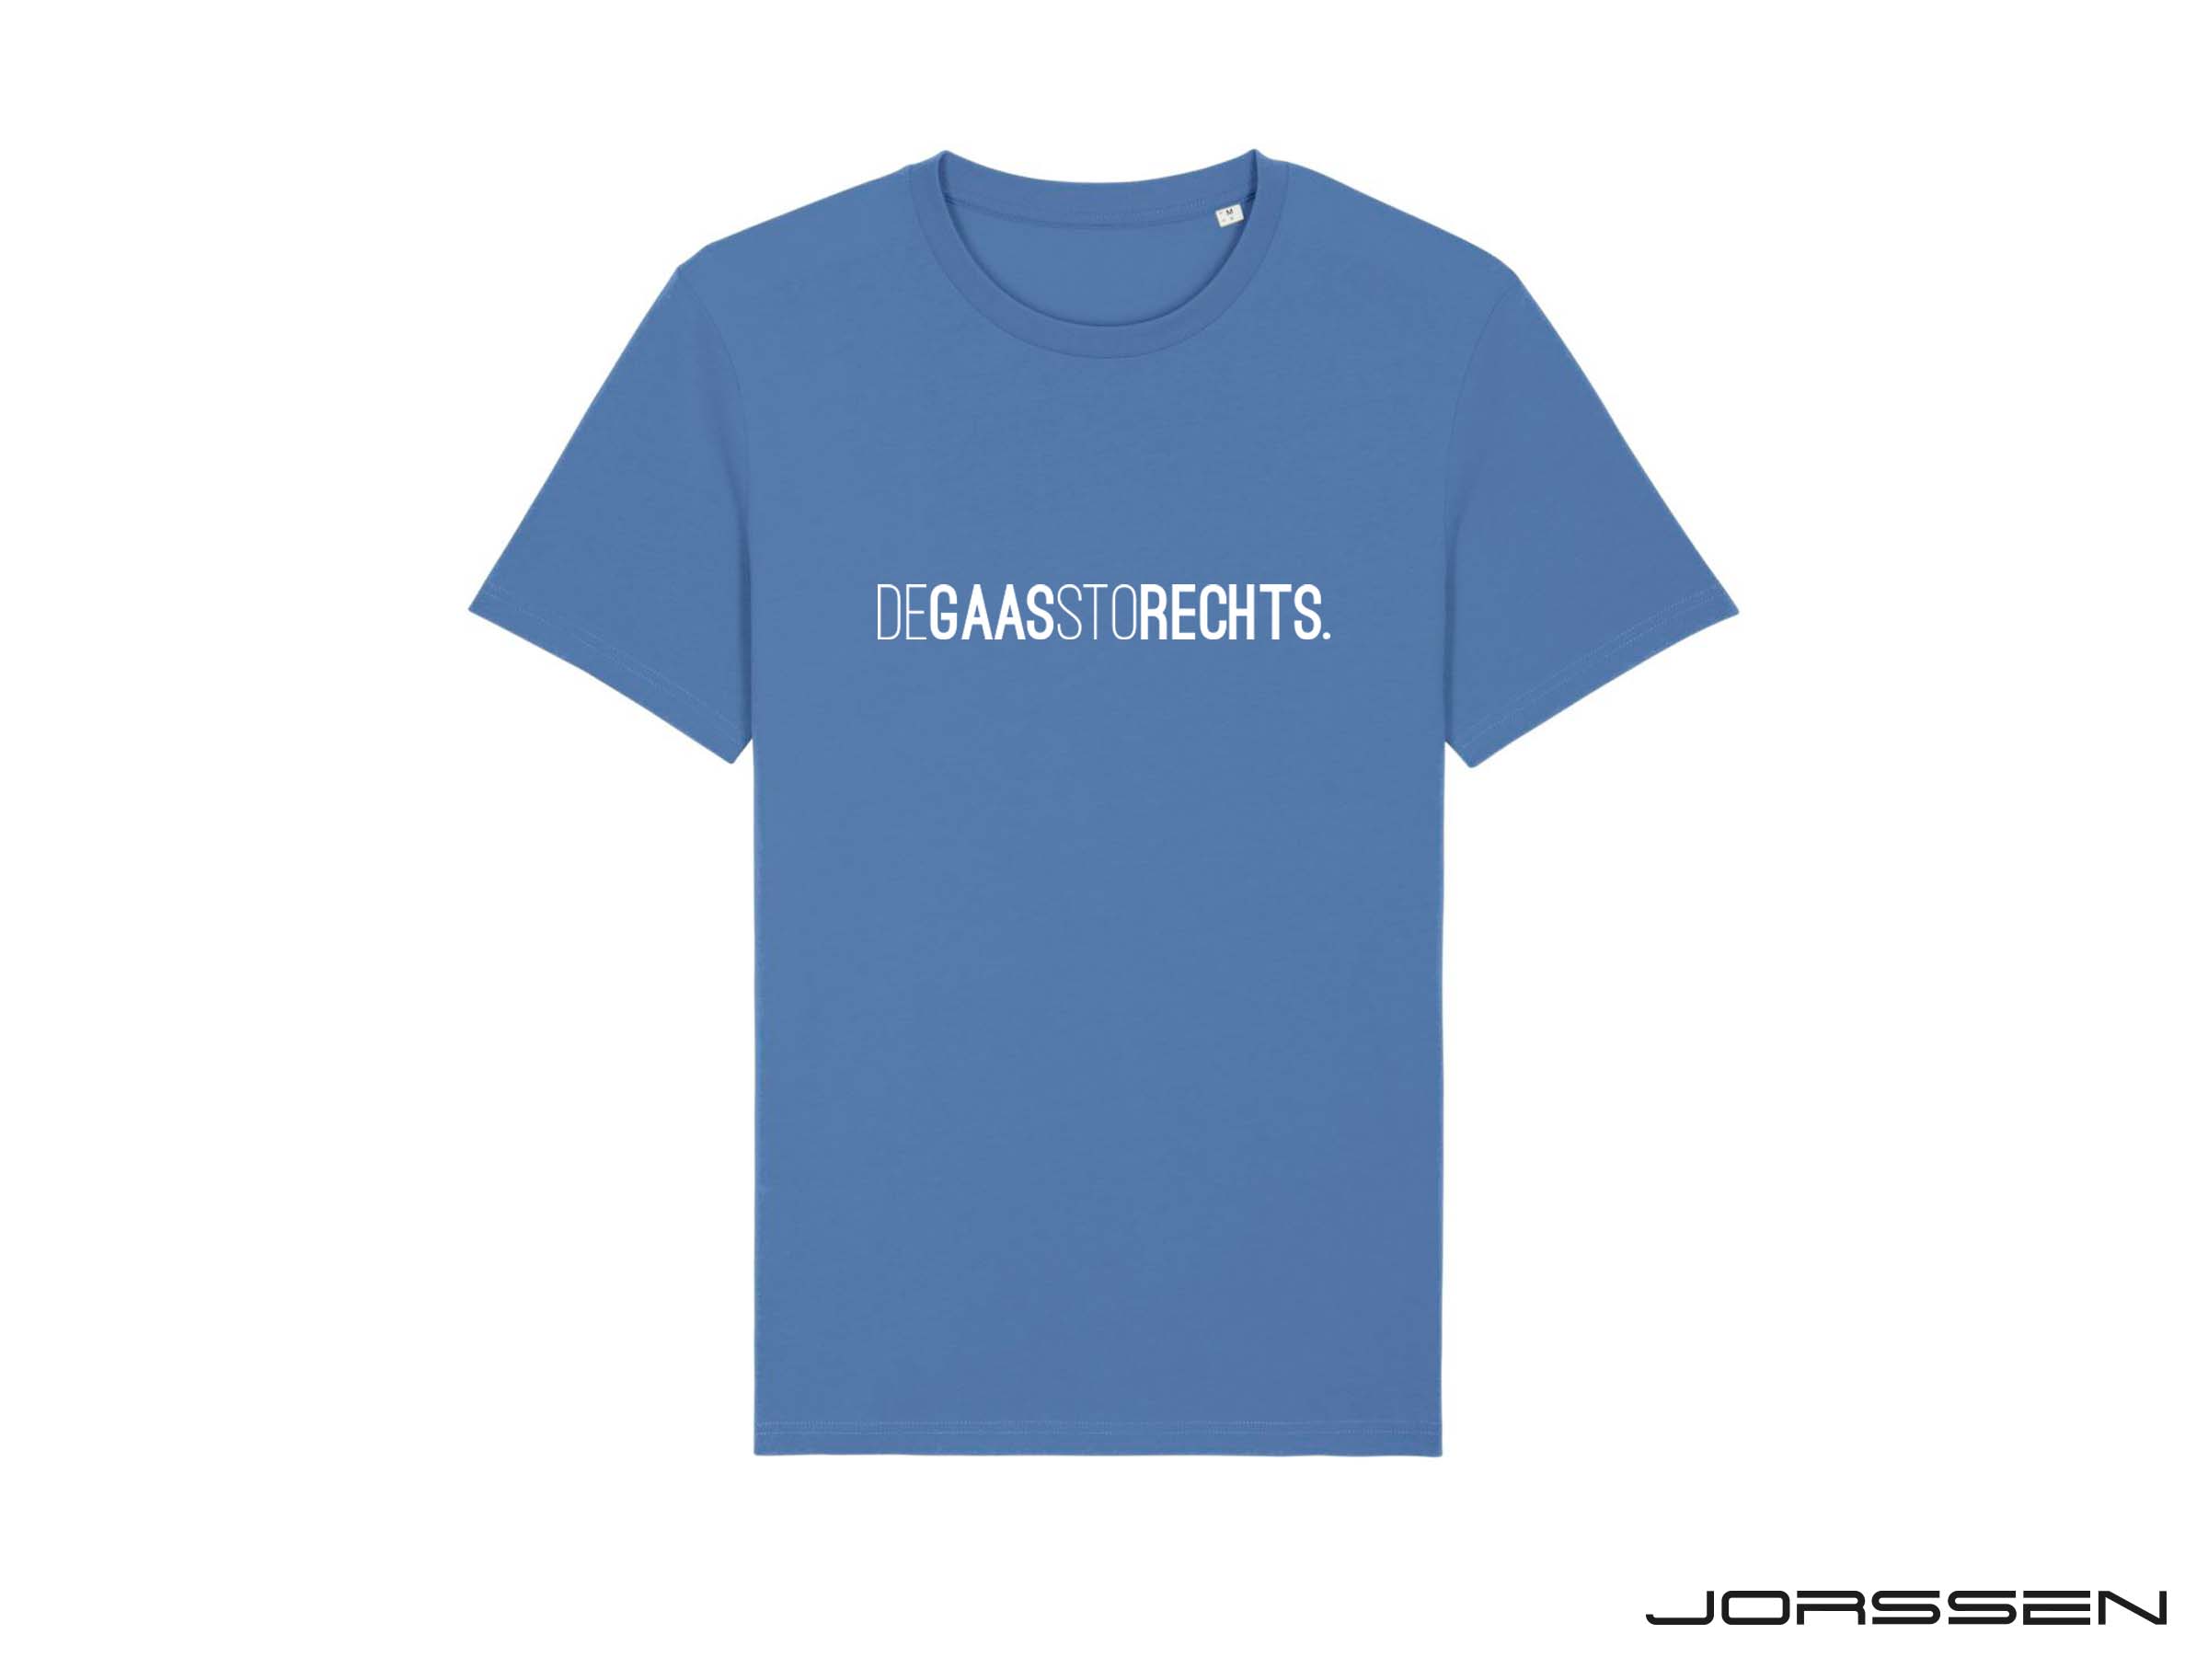 DEGAASSTORECHTS. Blauwe T-shirt voor volwassenen in samenwerking met Jorssen